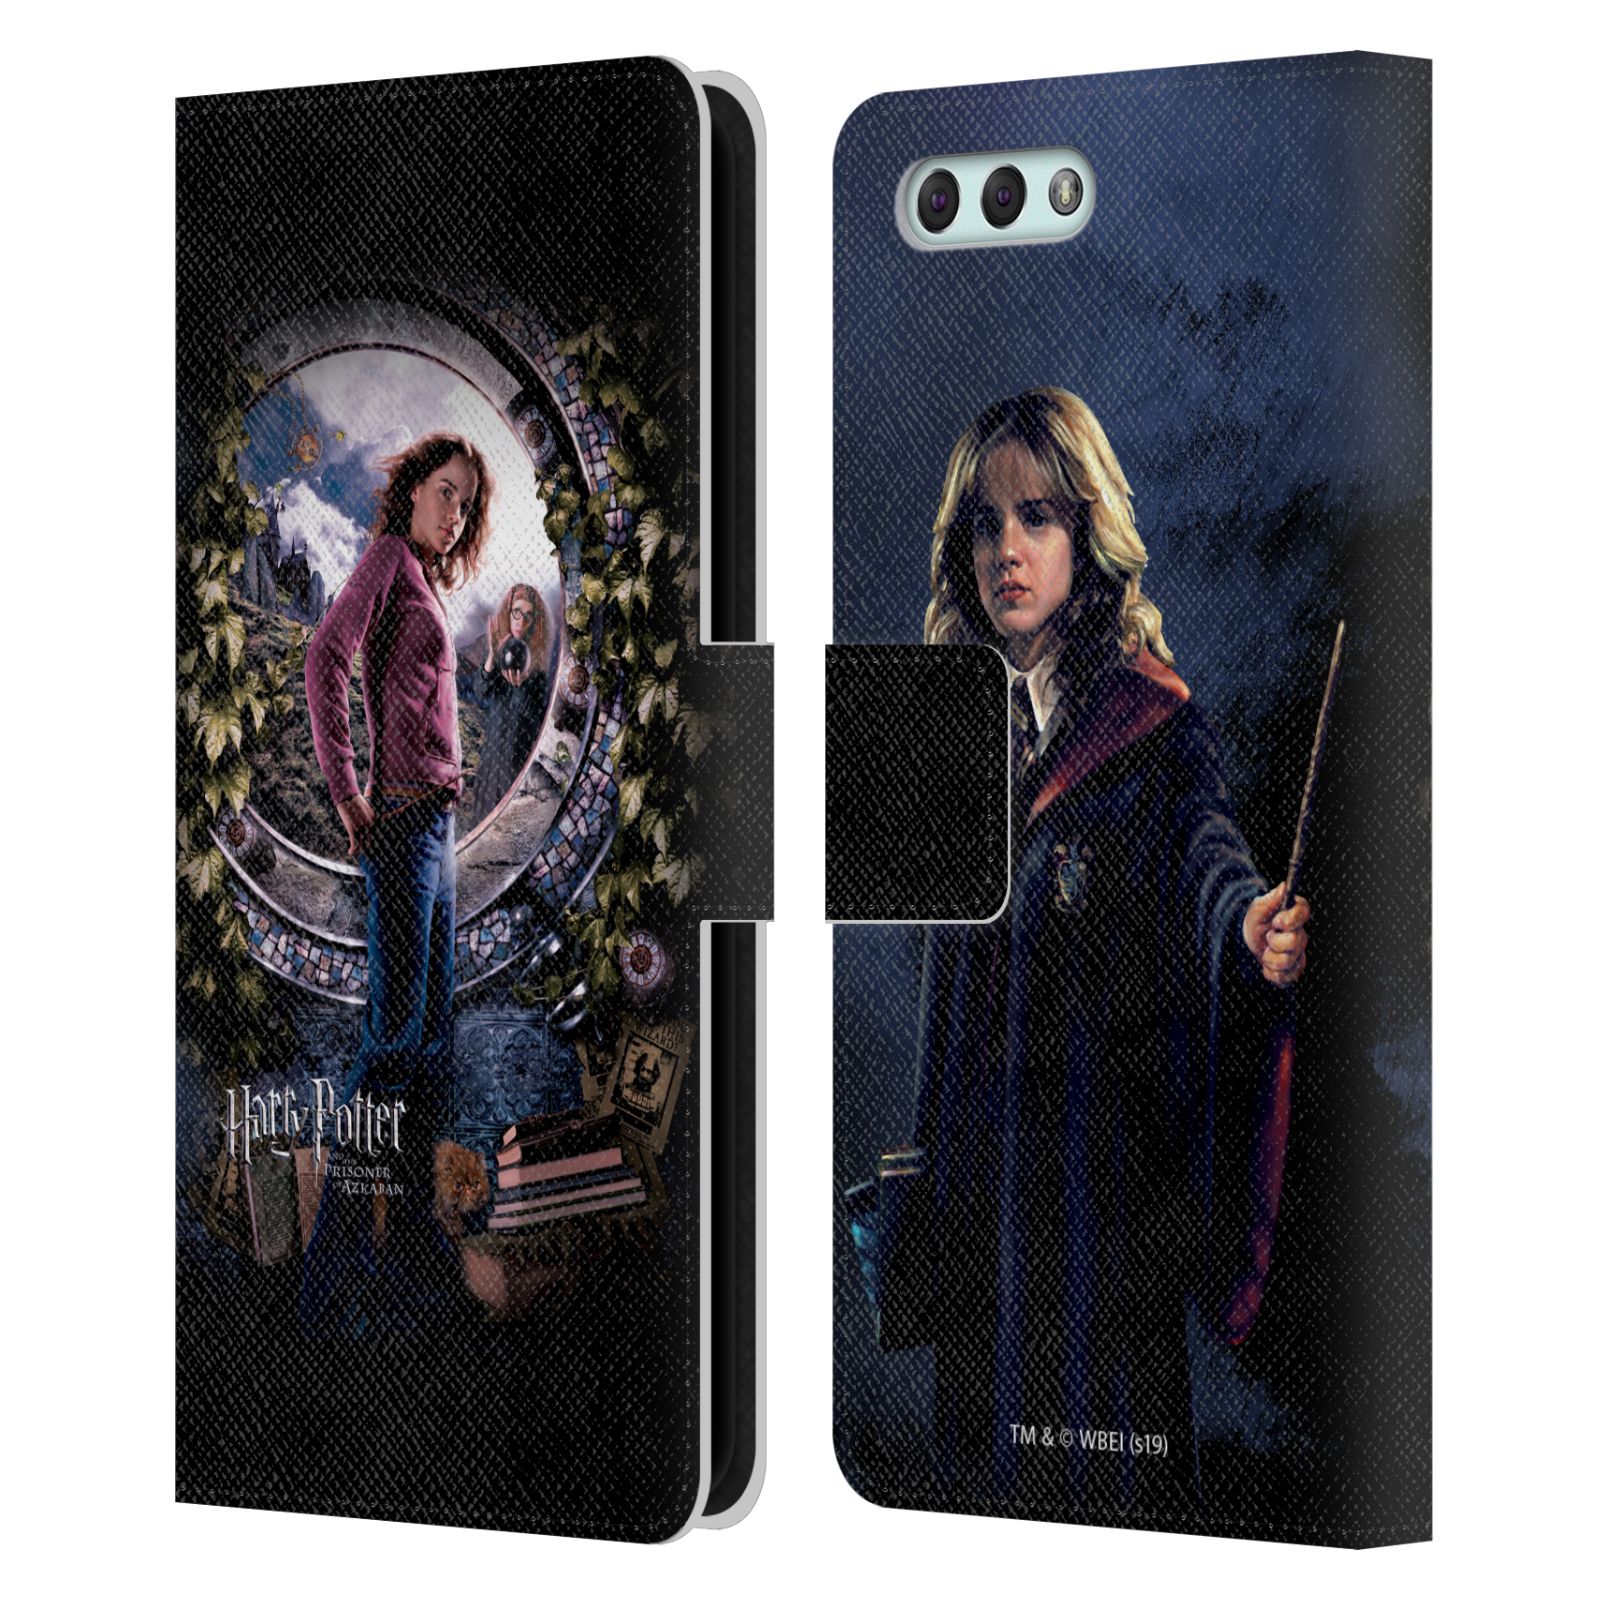 Pouzdro na mobil Asus Zenfone 4 ZE554KL  - HEAD CASE - Harry Potter - Vězeň z Azkabanu - Hermiona